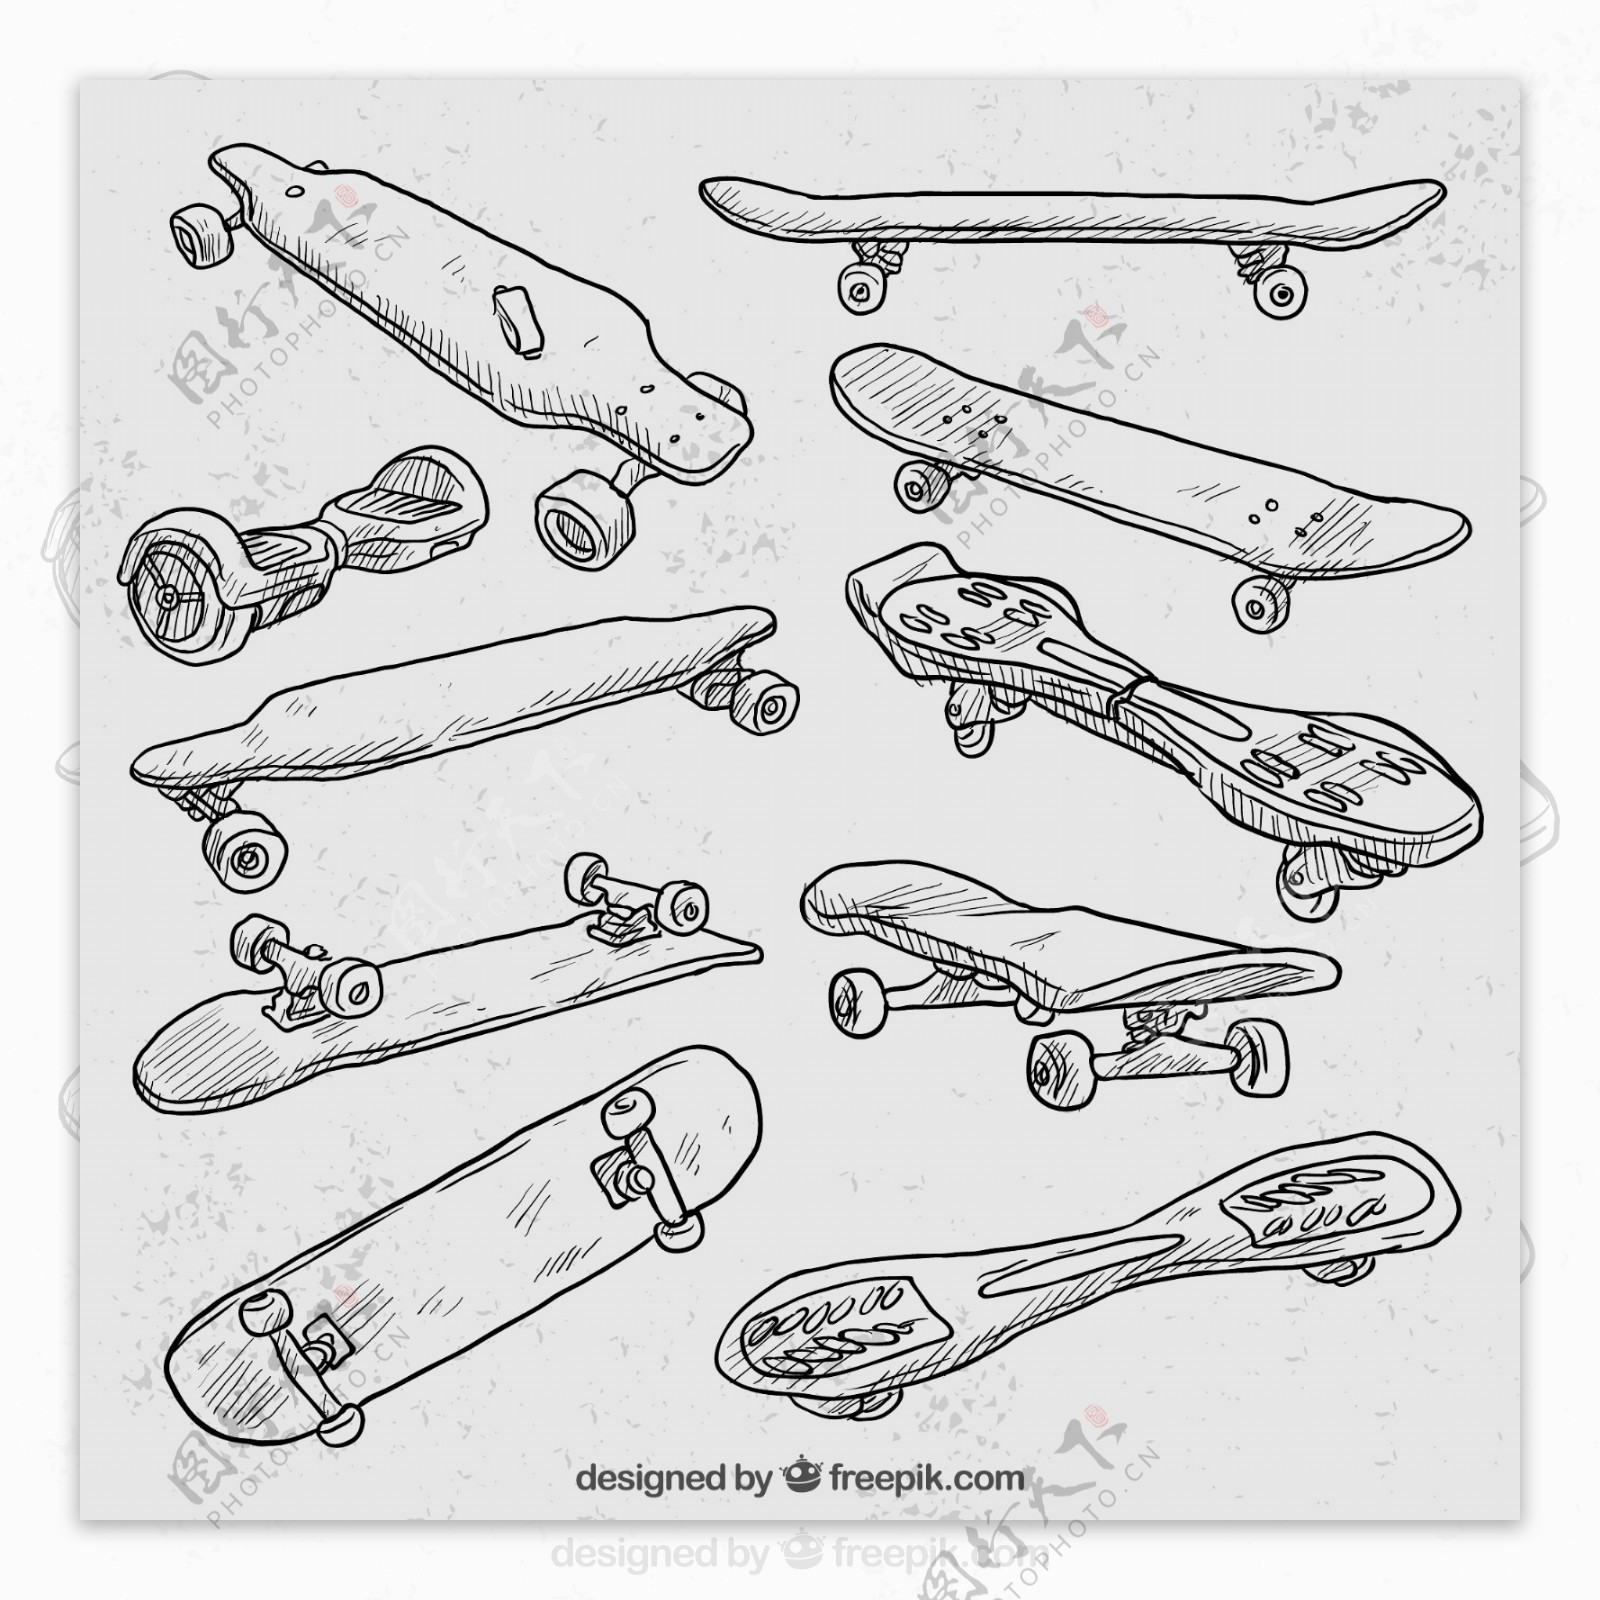 10款手绘滑板设计矢量素材